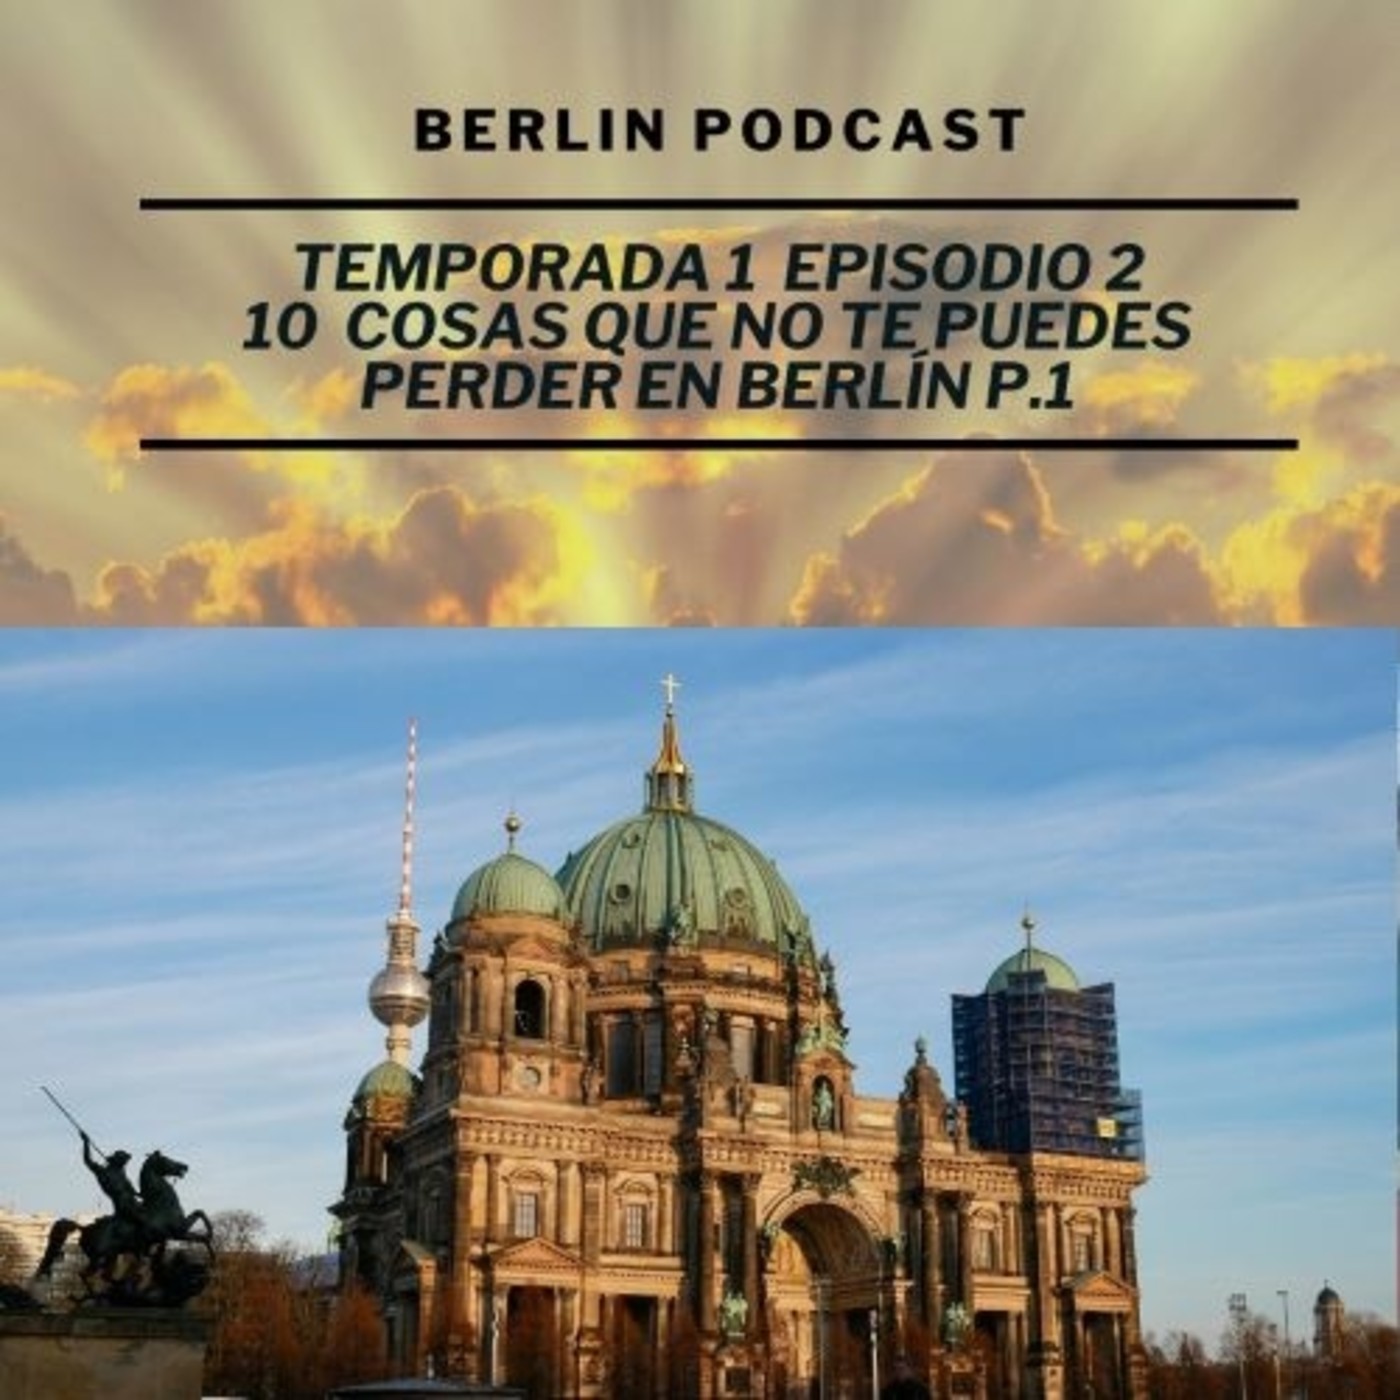 10 cosas que no te puedes perder en Berlín P.1 | Berlin Podcast